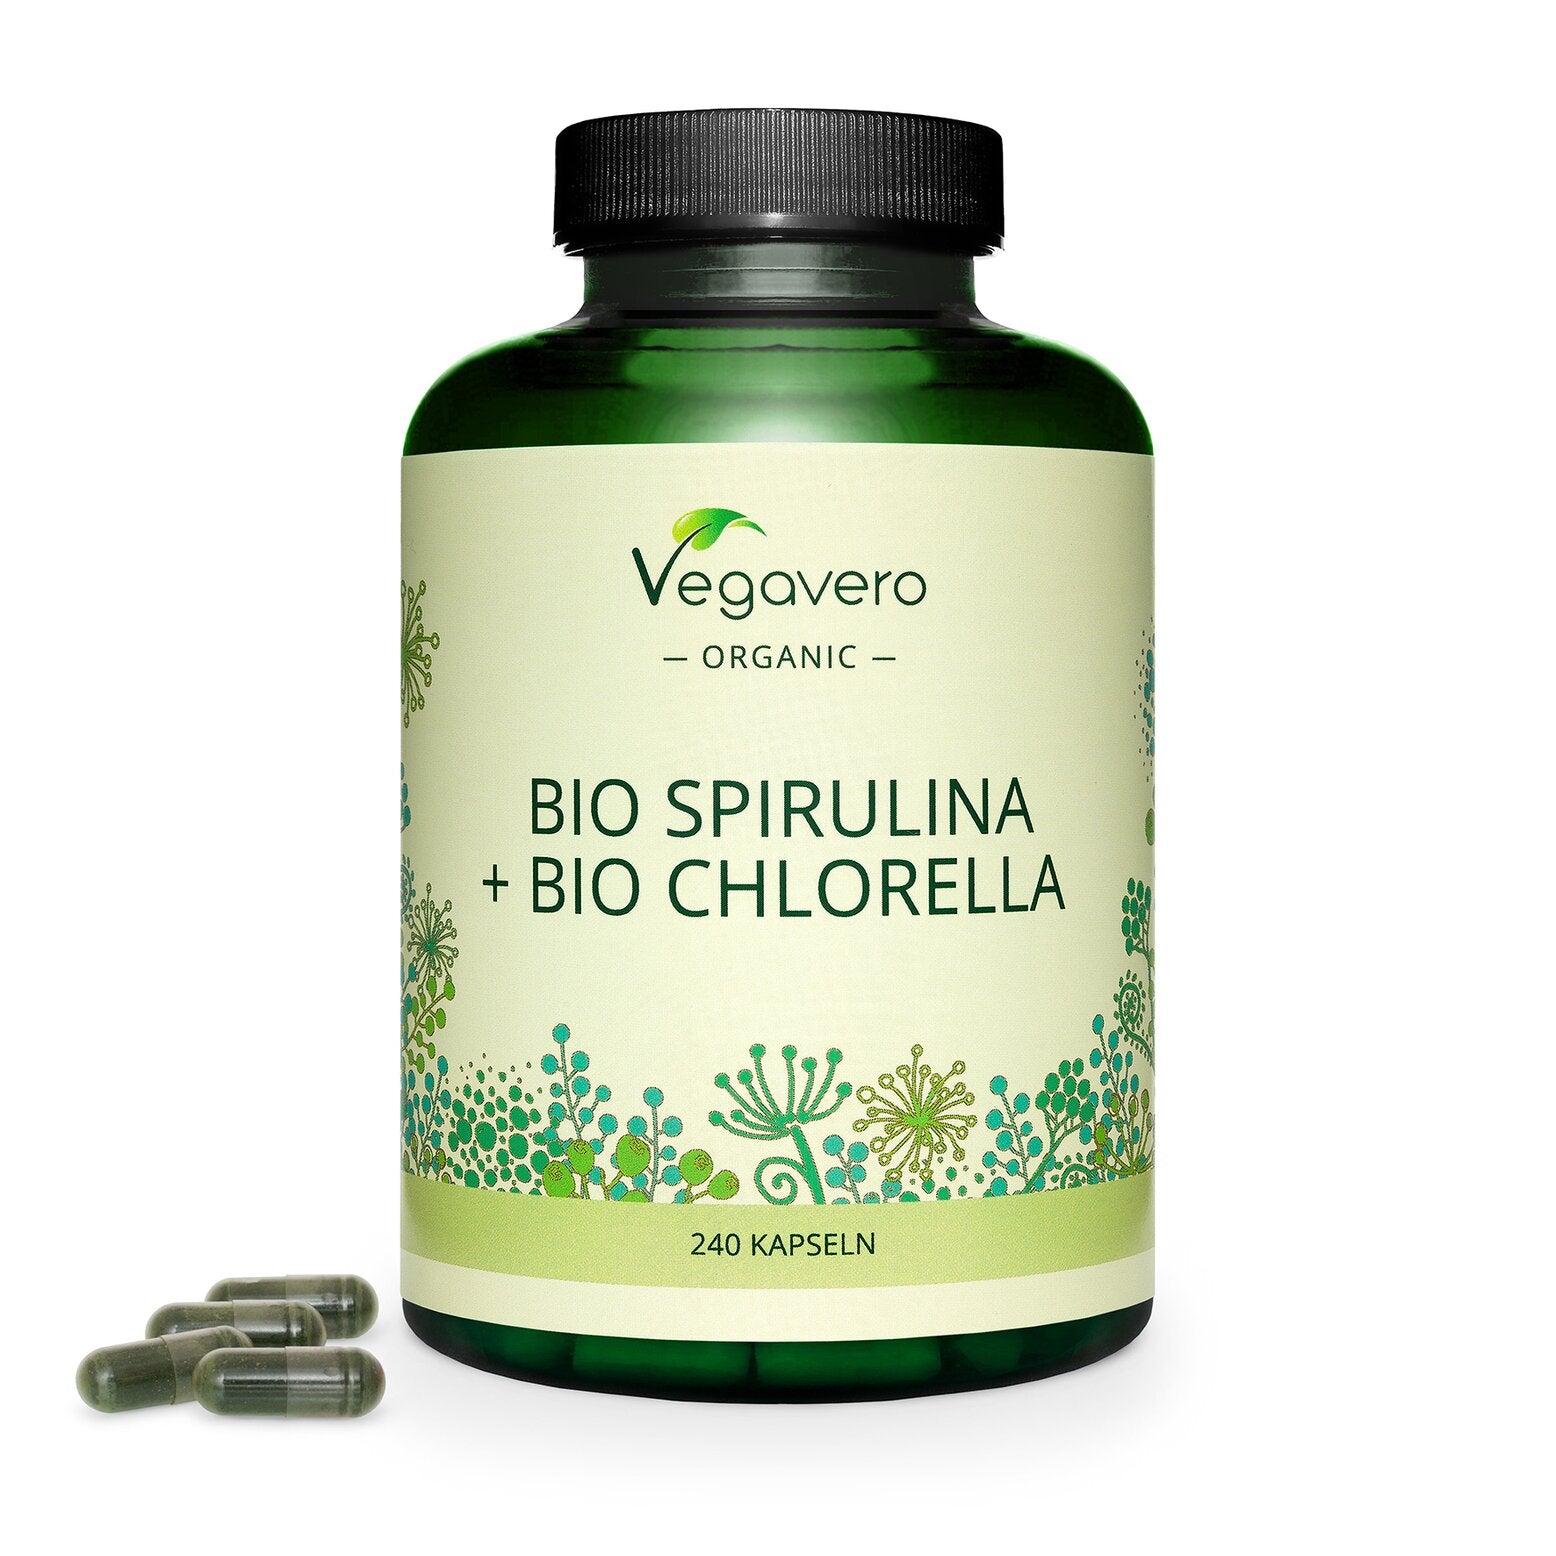 Bio spirulina + Bio chlorella - 240 capsules